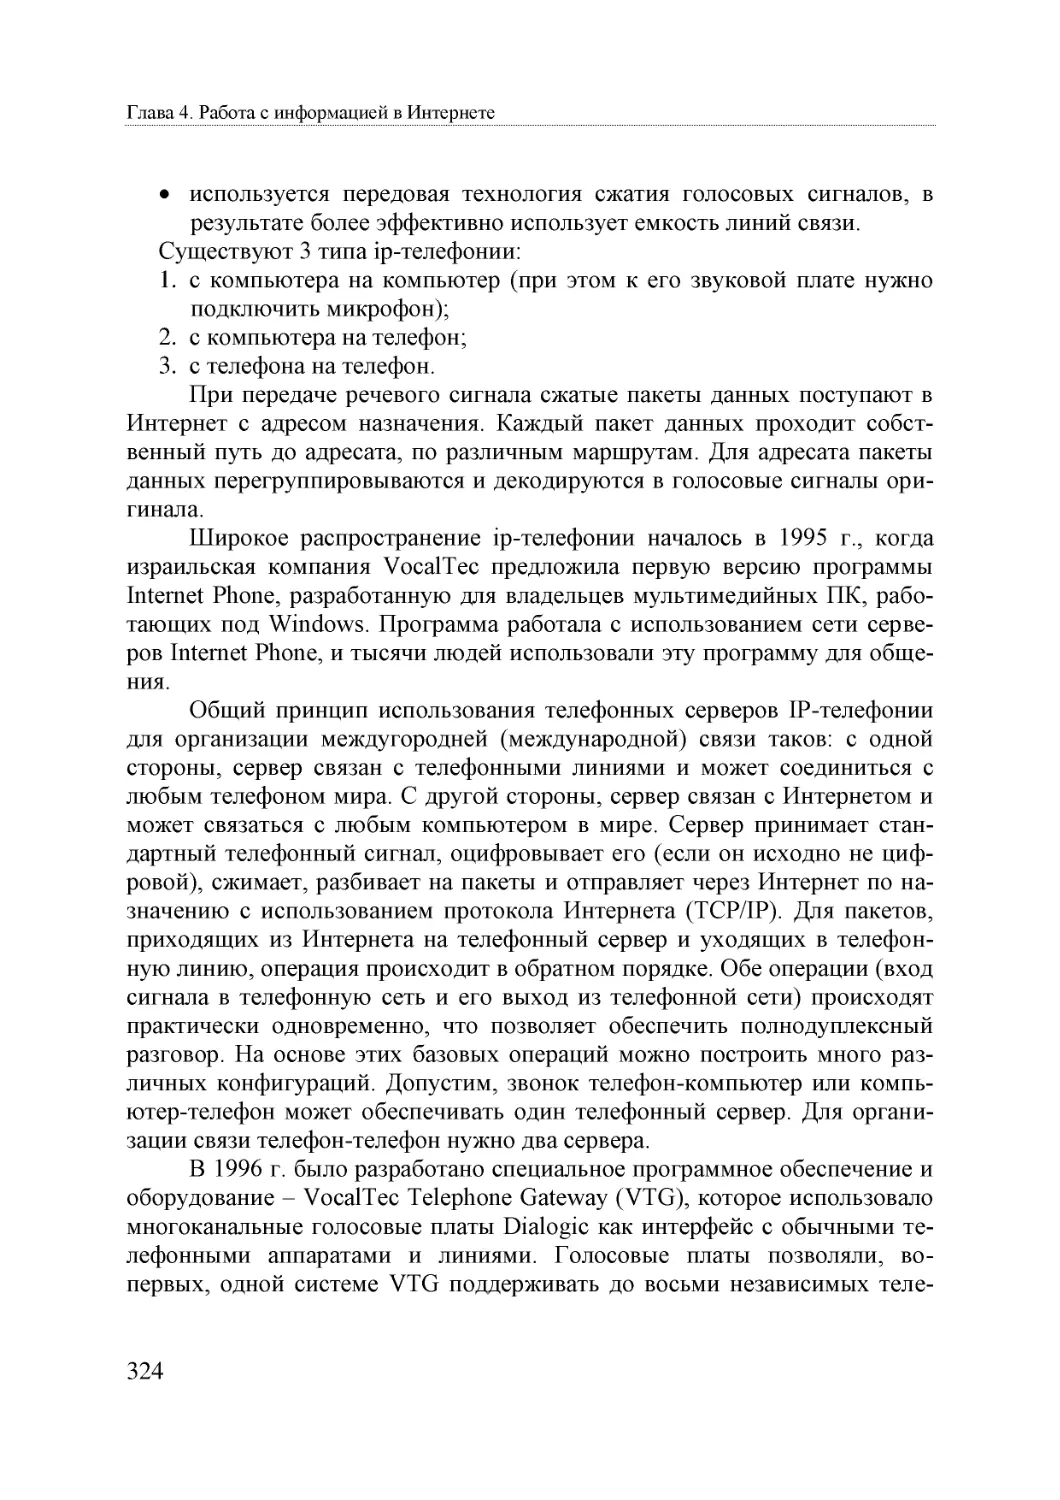 Informatika_Uchebnik_dlya_vuzov_2010 324